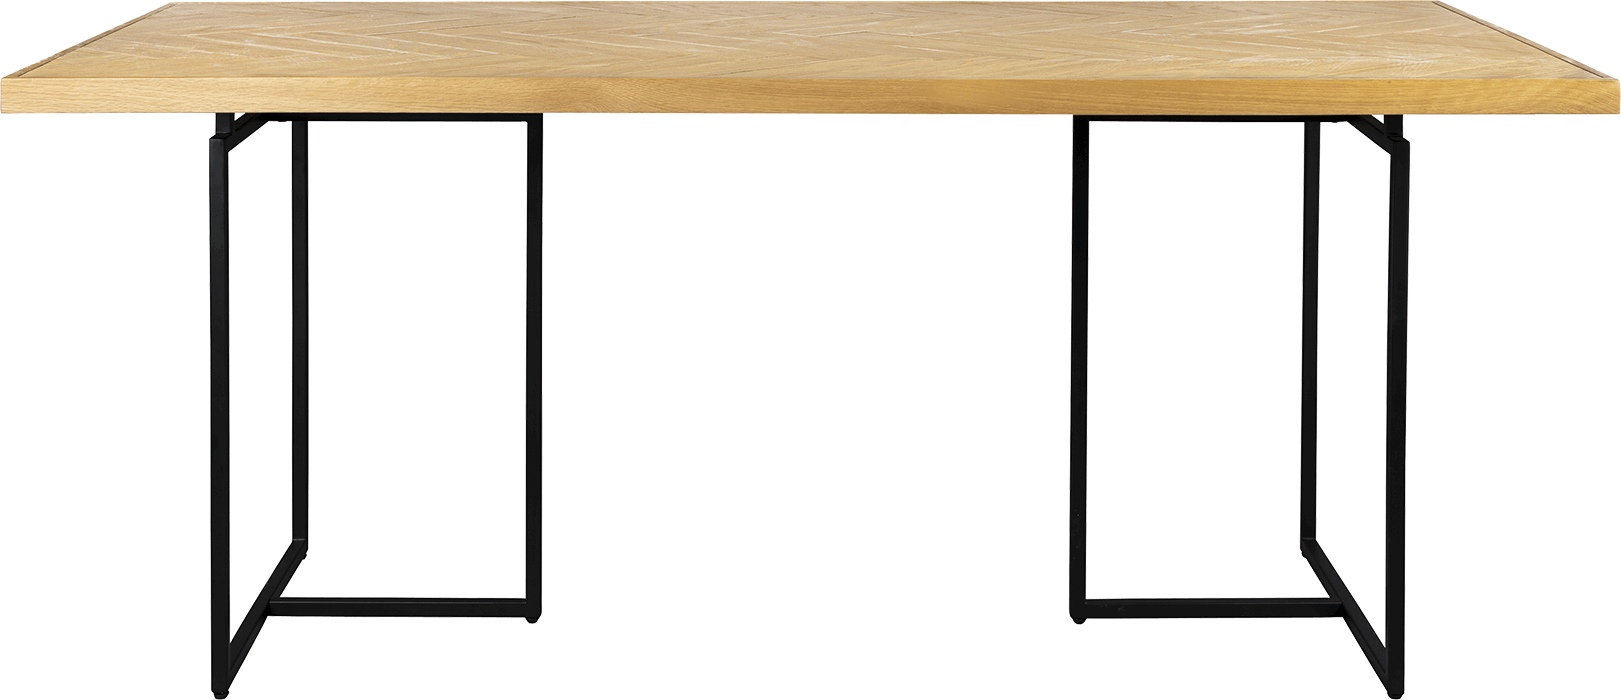 Dutchbone Class jedálenský stôl - Svetlé drevo, 180 x 90 cm